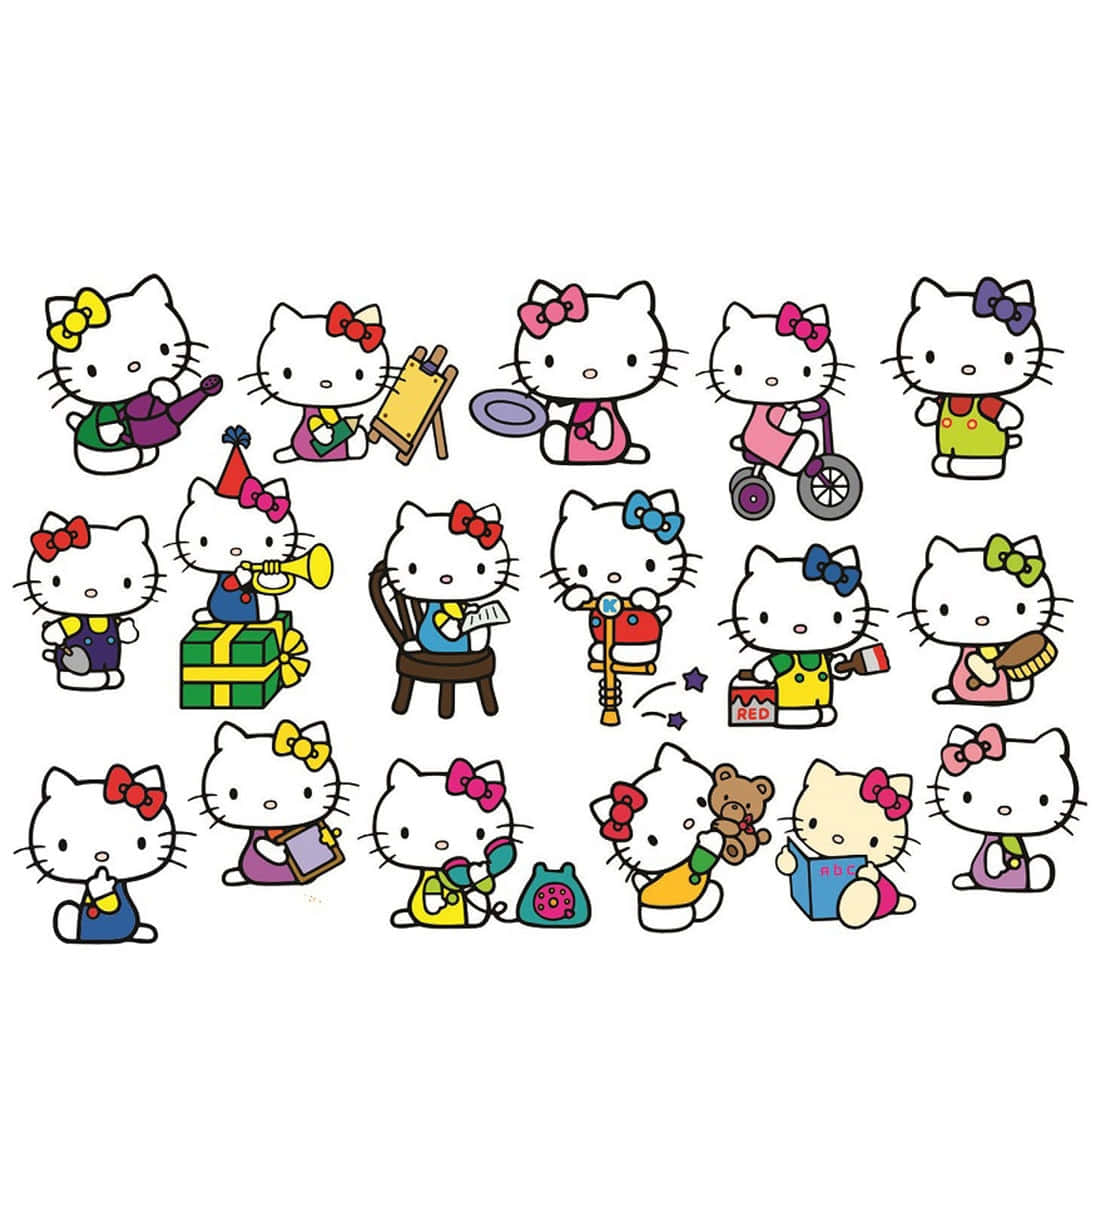 Adorable and Charming Kawaii Hello Kitty Wallpaper Wallpaper